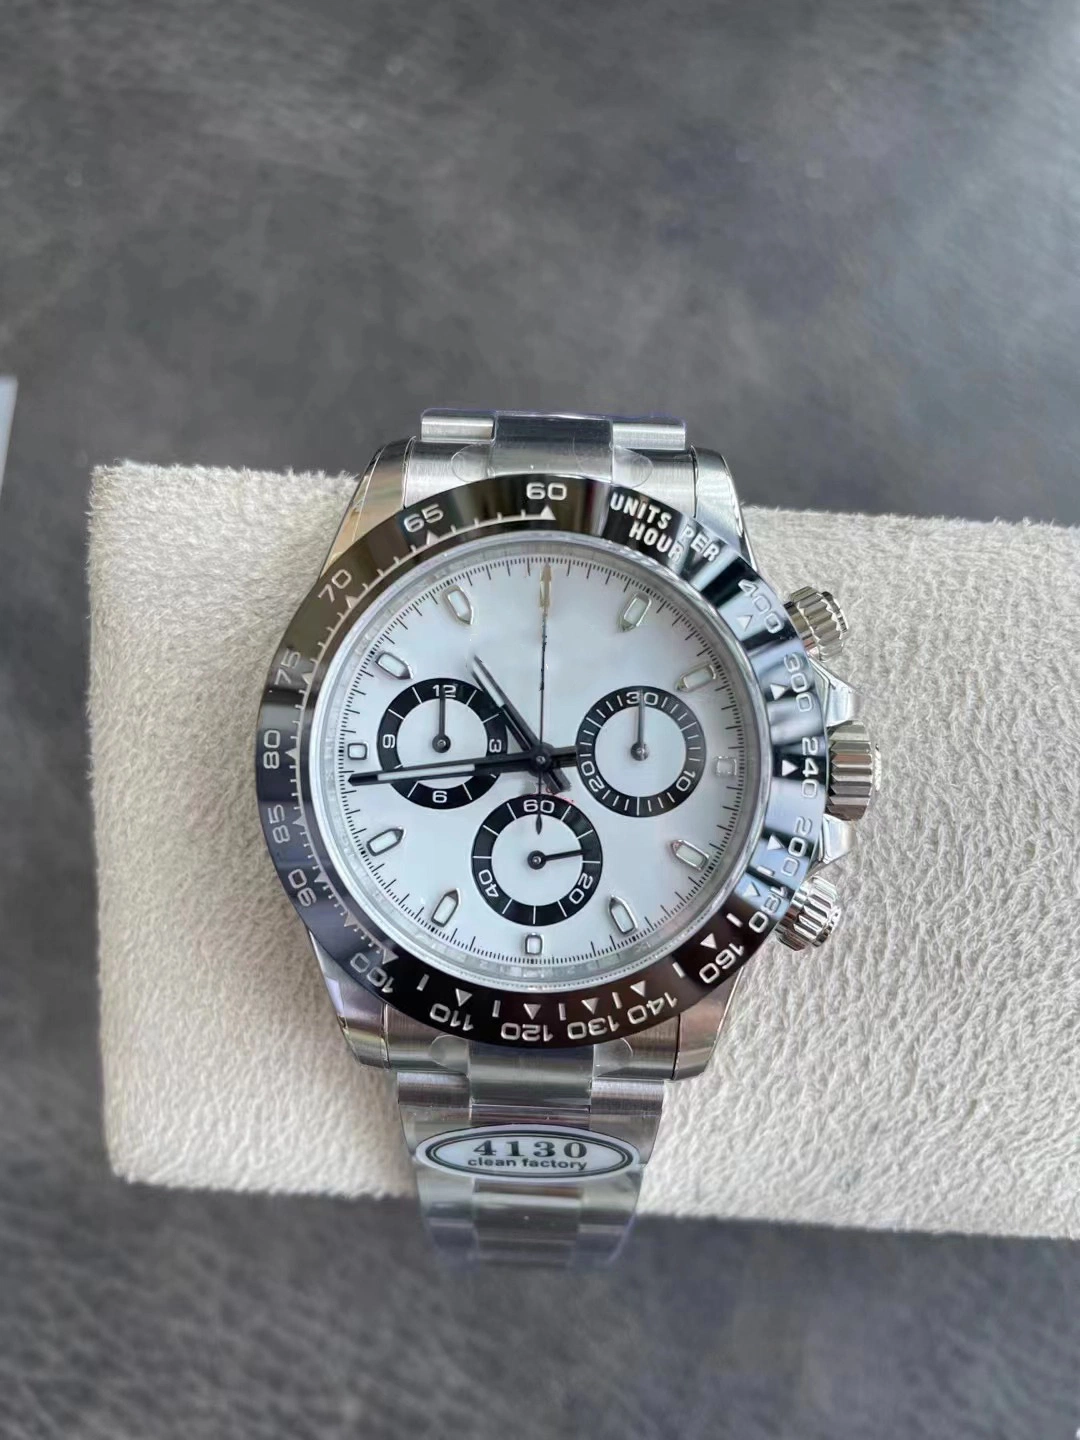 BT Noob Clean Factory Watch 5A Watch Super Clone 4130 Часы для занятий спортом Часы Механическая часы 904L Нержавеющая сталь панда Посмотрите на черное керамическое кольцо